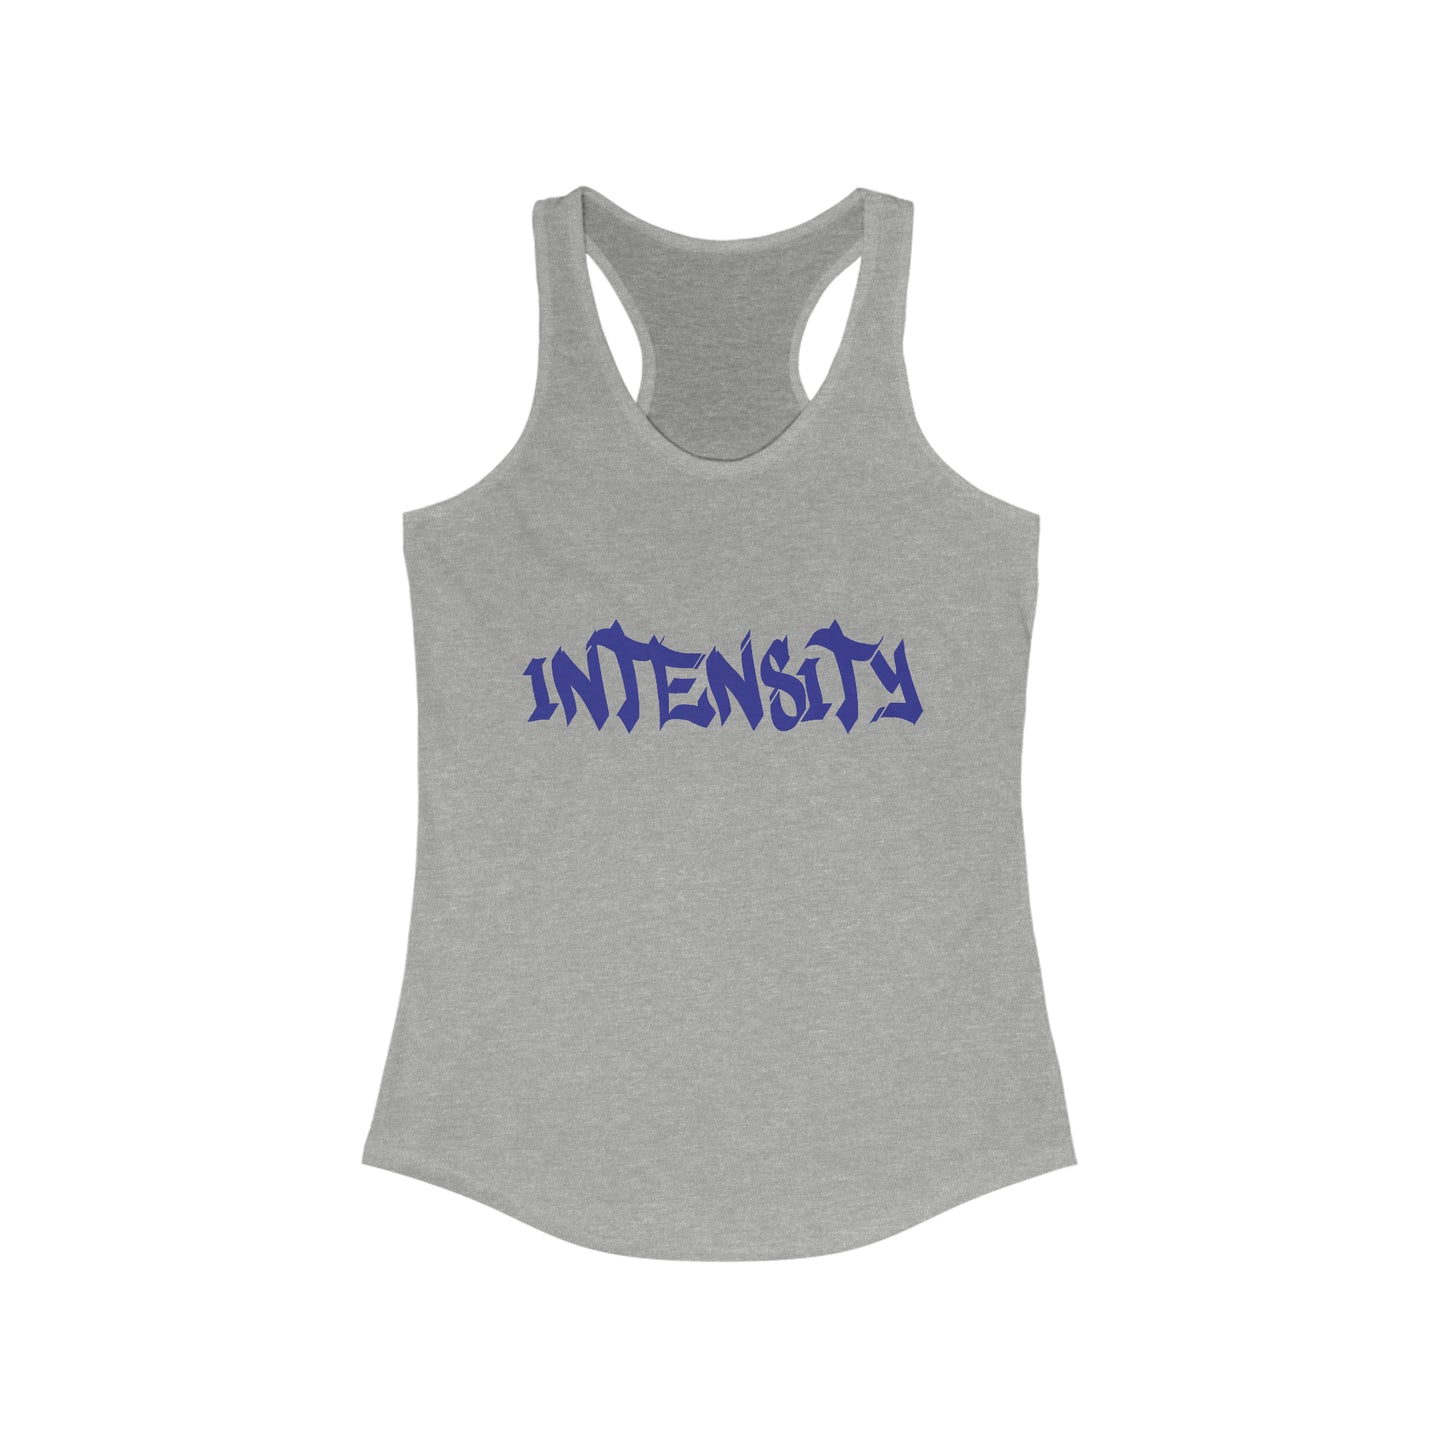 Women's "INTENSITY" Women's Tank Top Blue Logo